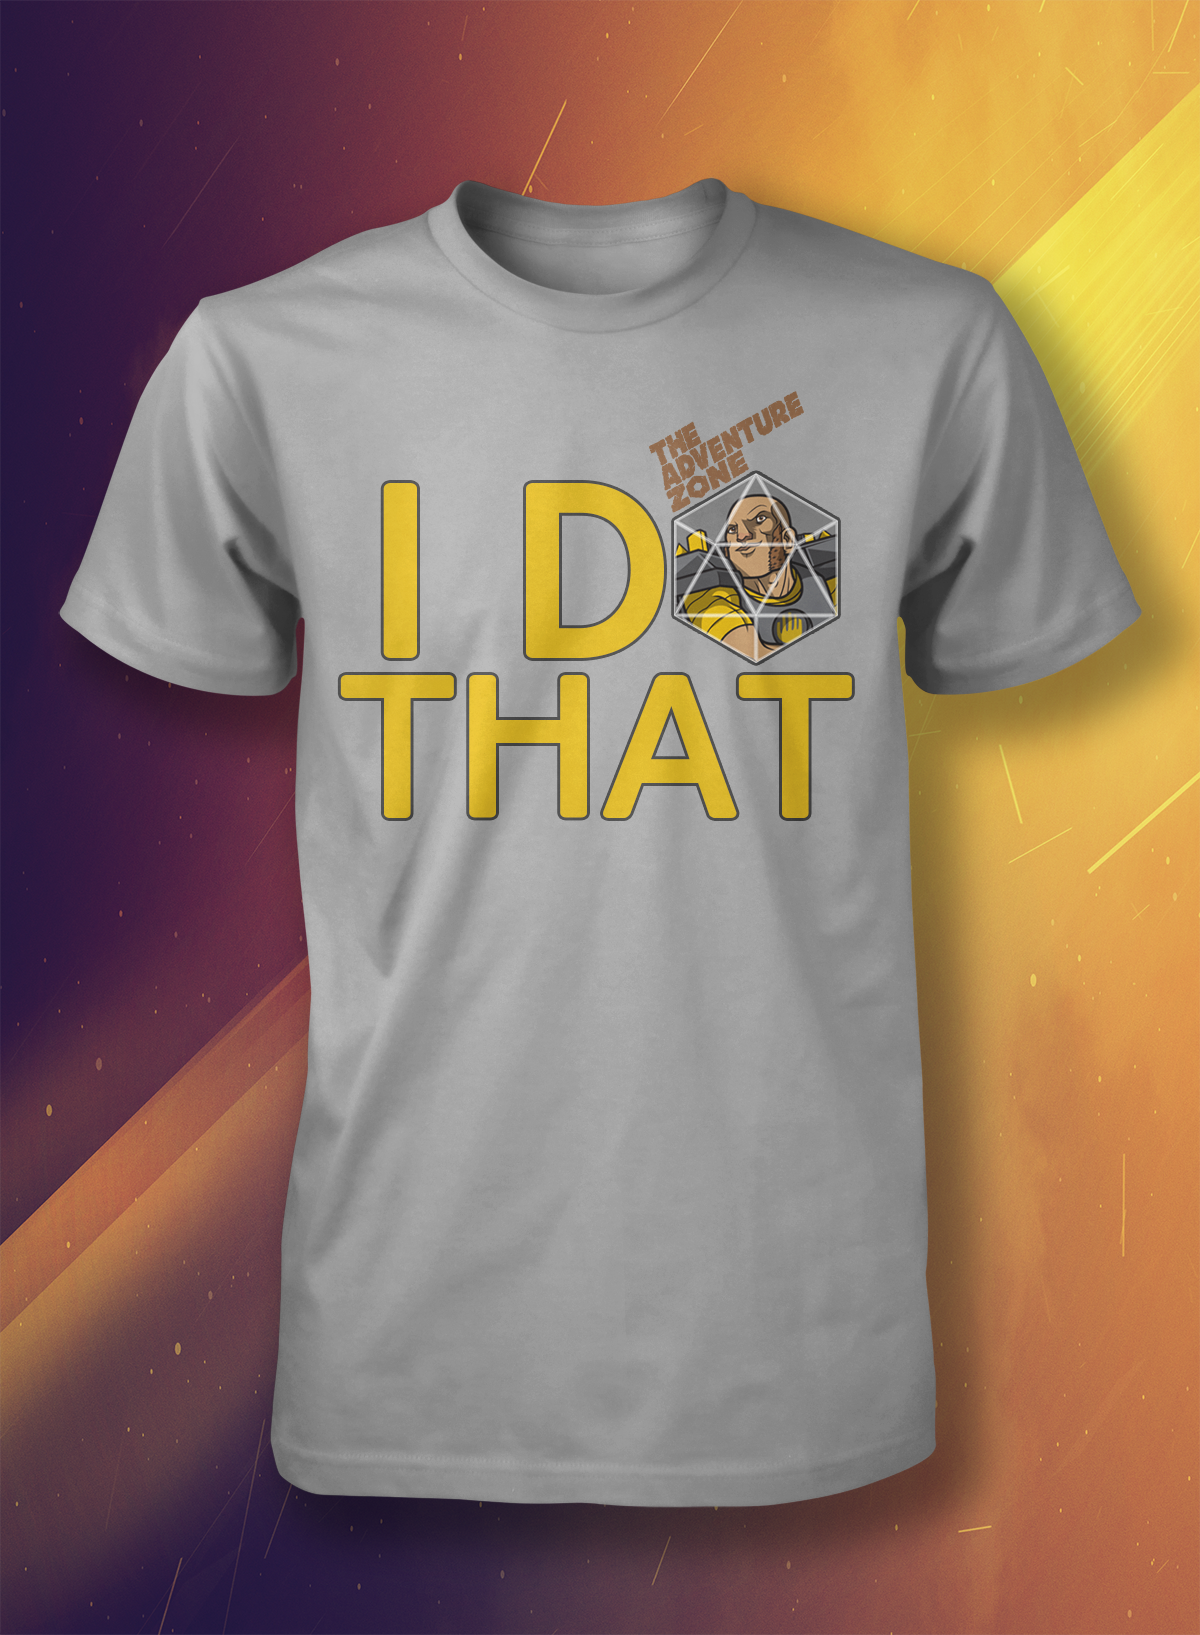 Adobe Portfolio tshirt shirt Clothing random graphic design  ludacris